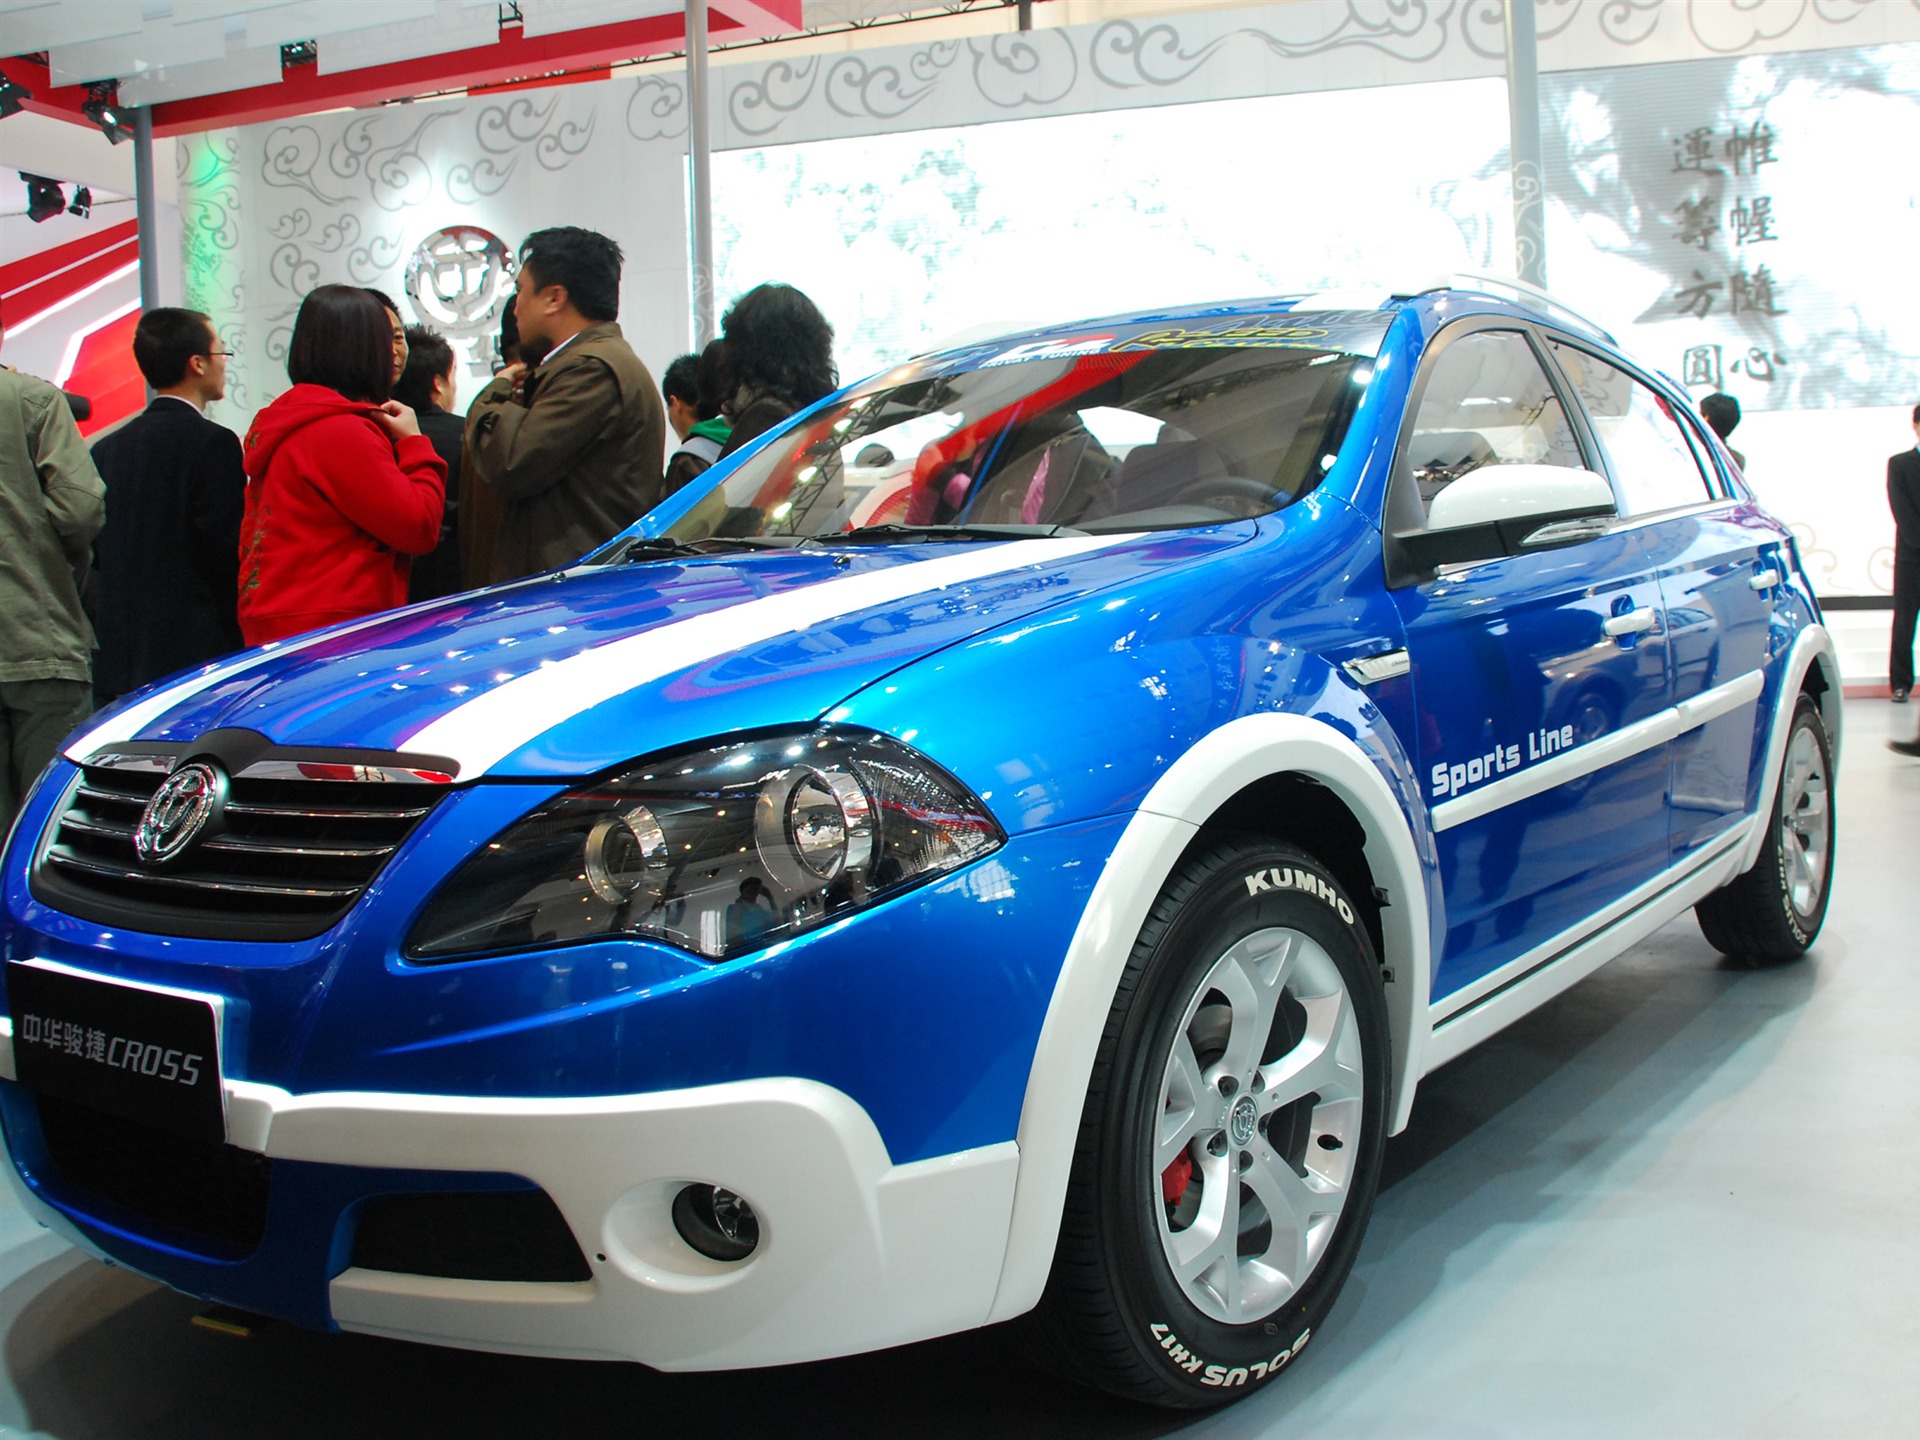 2010北京国际车展(一) (z321x123作品)21 - 1920x1440